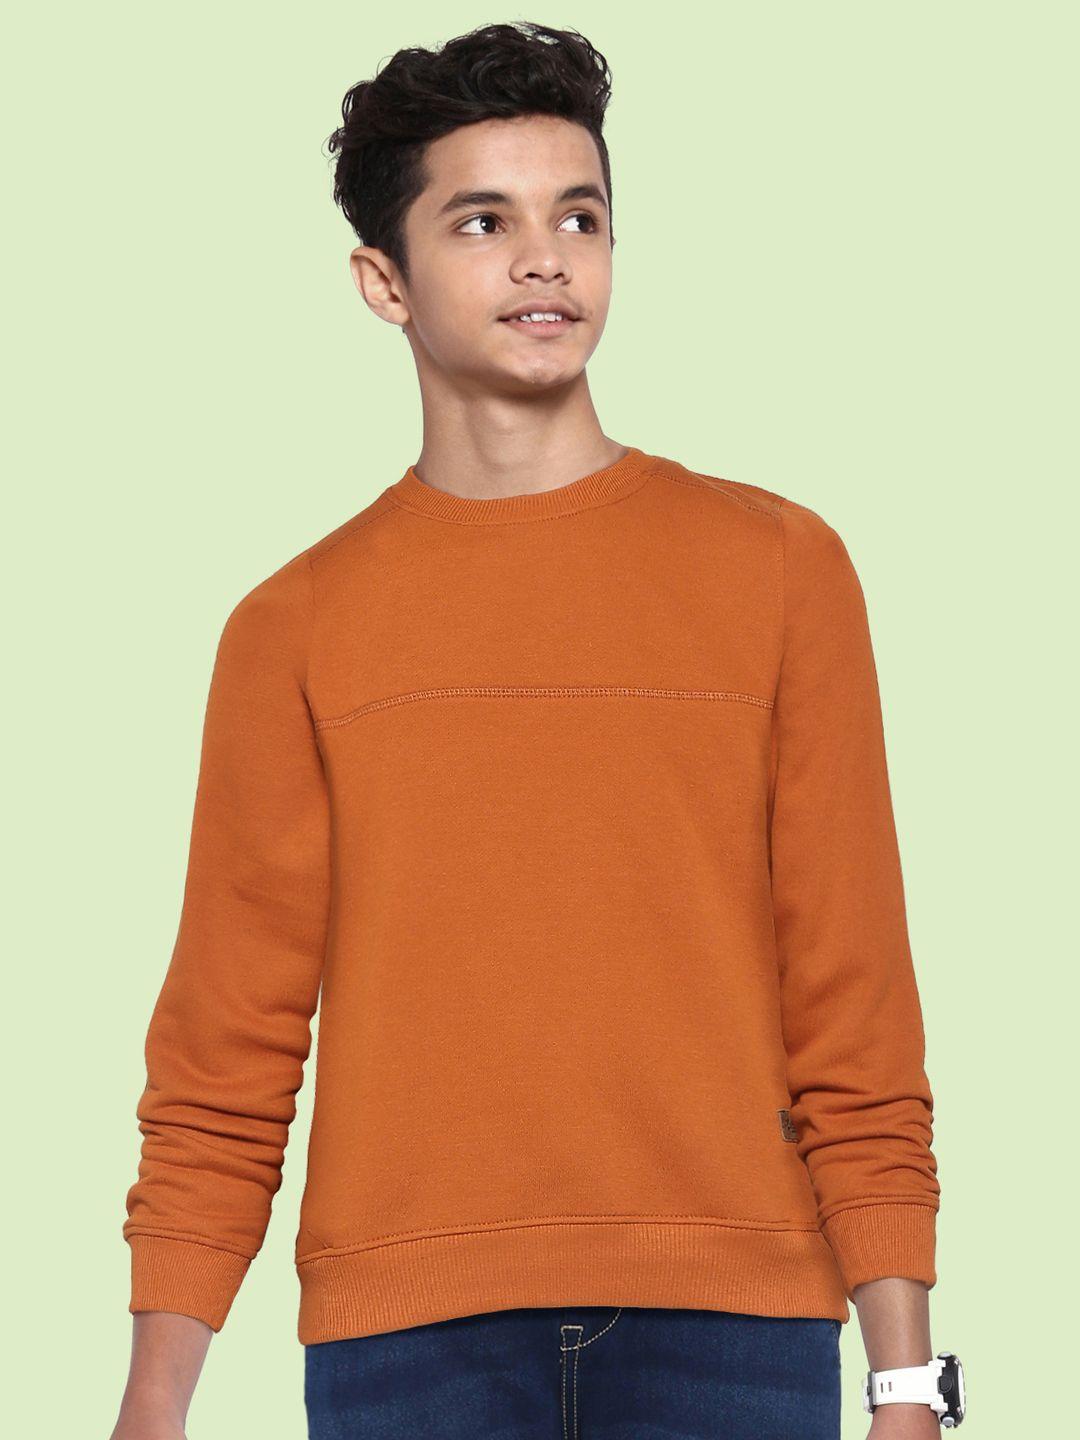 uth-by-roadster-boys-rust-orange-solid-sweatshirt